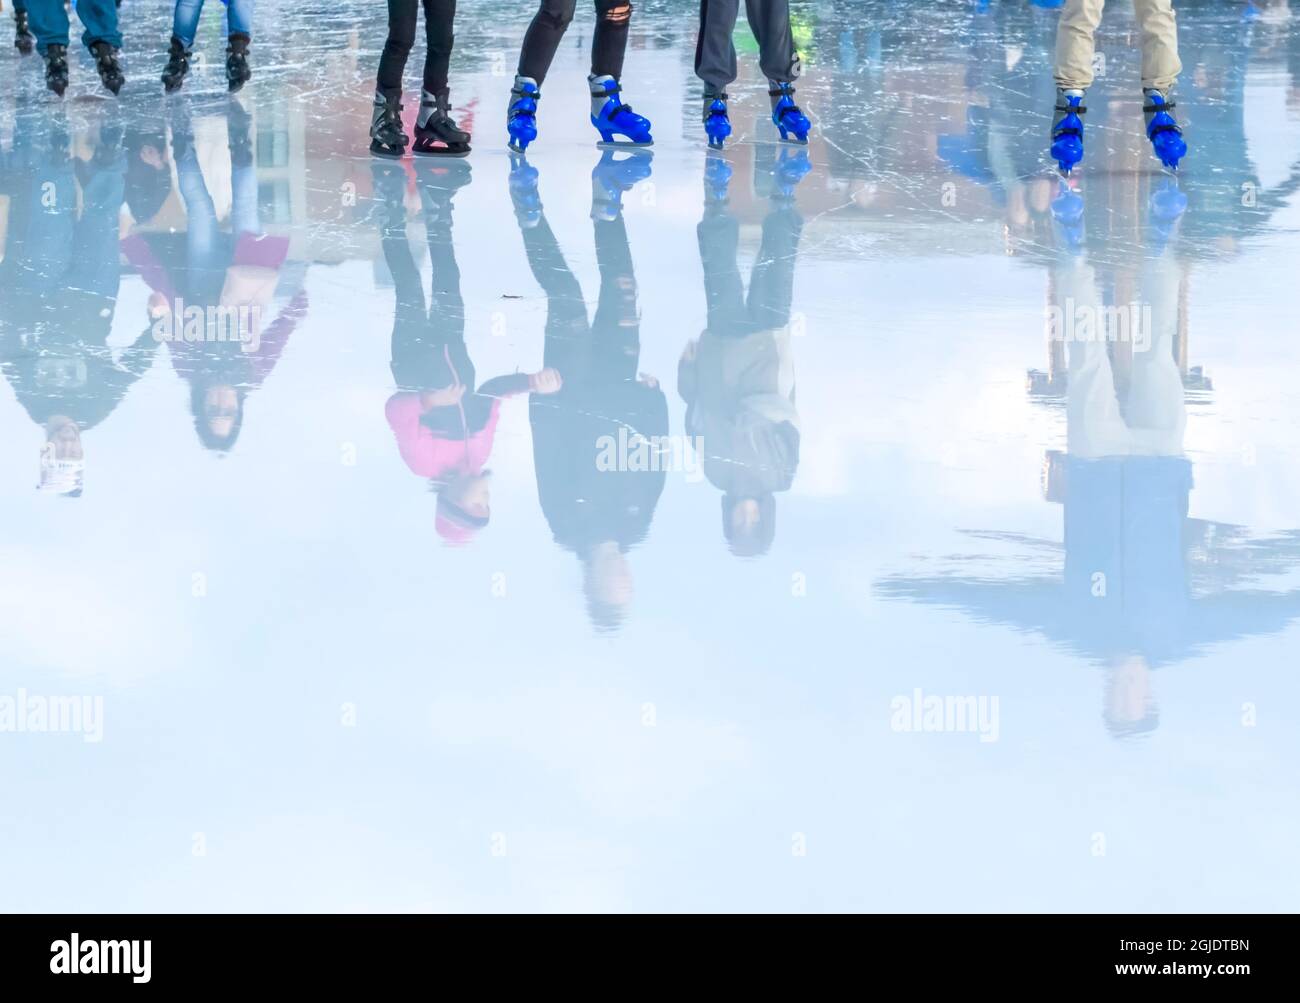 États-Unis, Indiana, Carmel. Patineurs de glace reflétés dans la glace. Credit AS: Wendy Kaveney / Galerie Jaynes / DanitaDelimont.com Banque D'Images